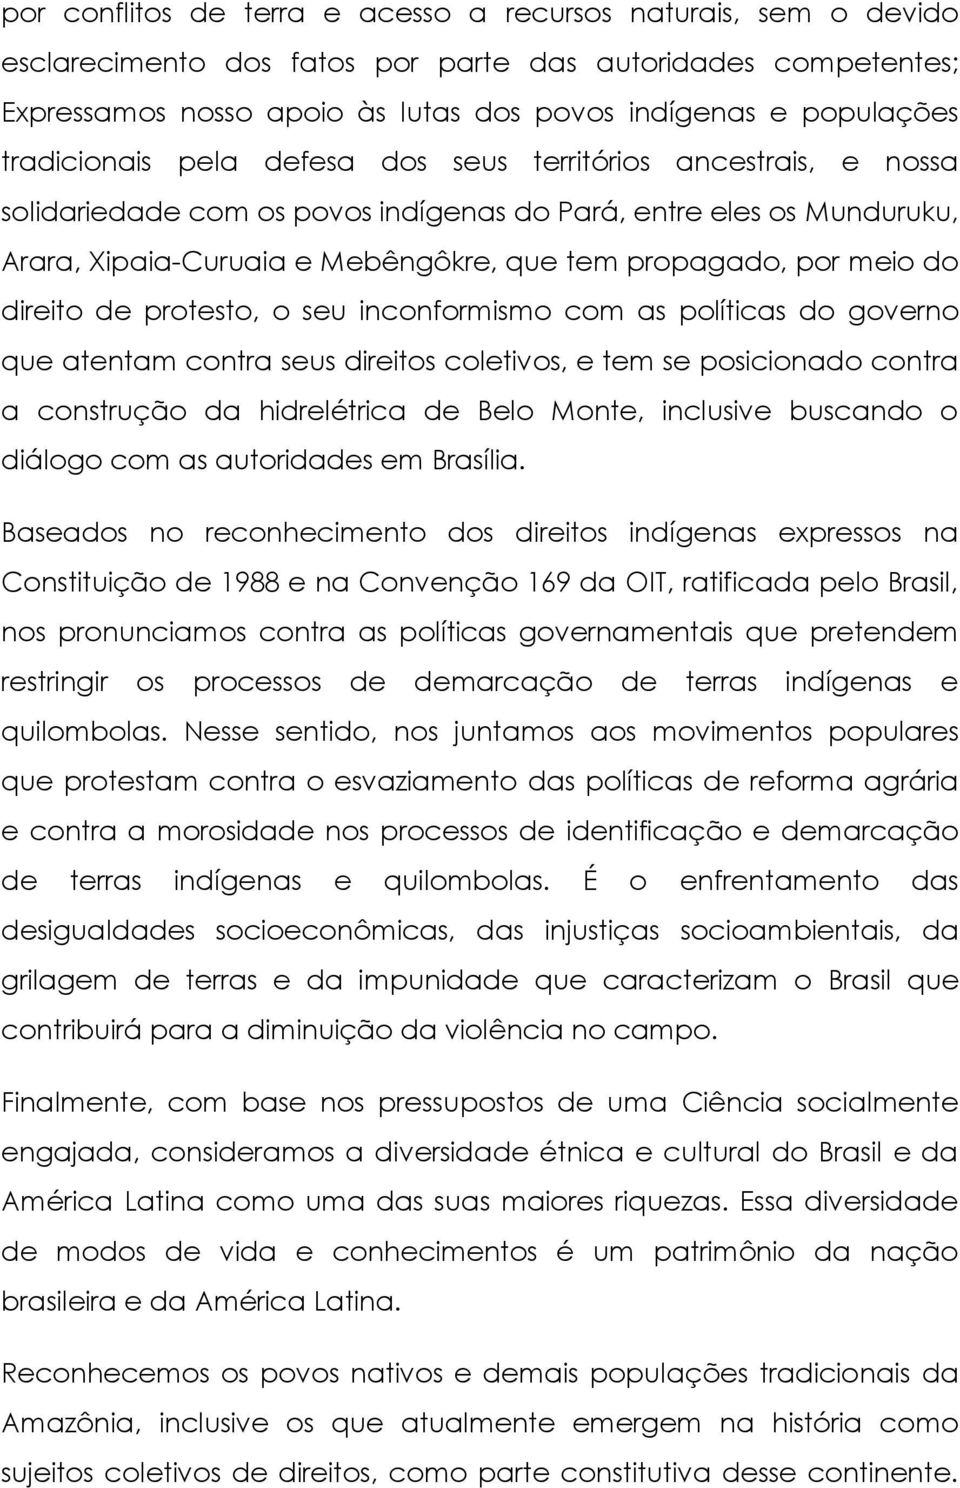 meio do direito de protesto, o seu inconformismo com as políticas do governo que atentam contra seus direitos coletivos, e tem se posicionado contra a construção da hidrelétrica de Belo Monte,